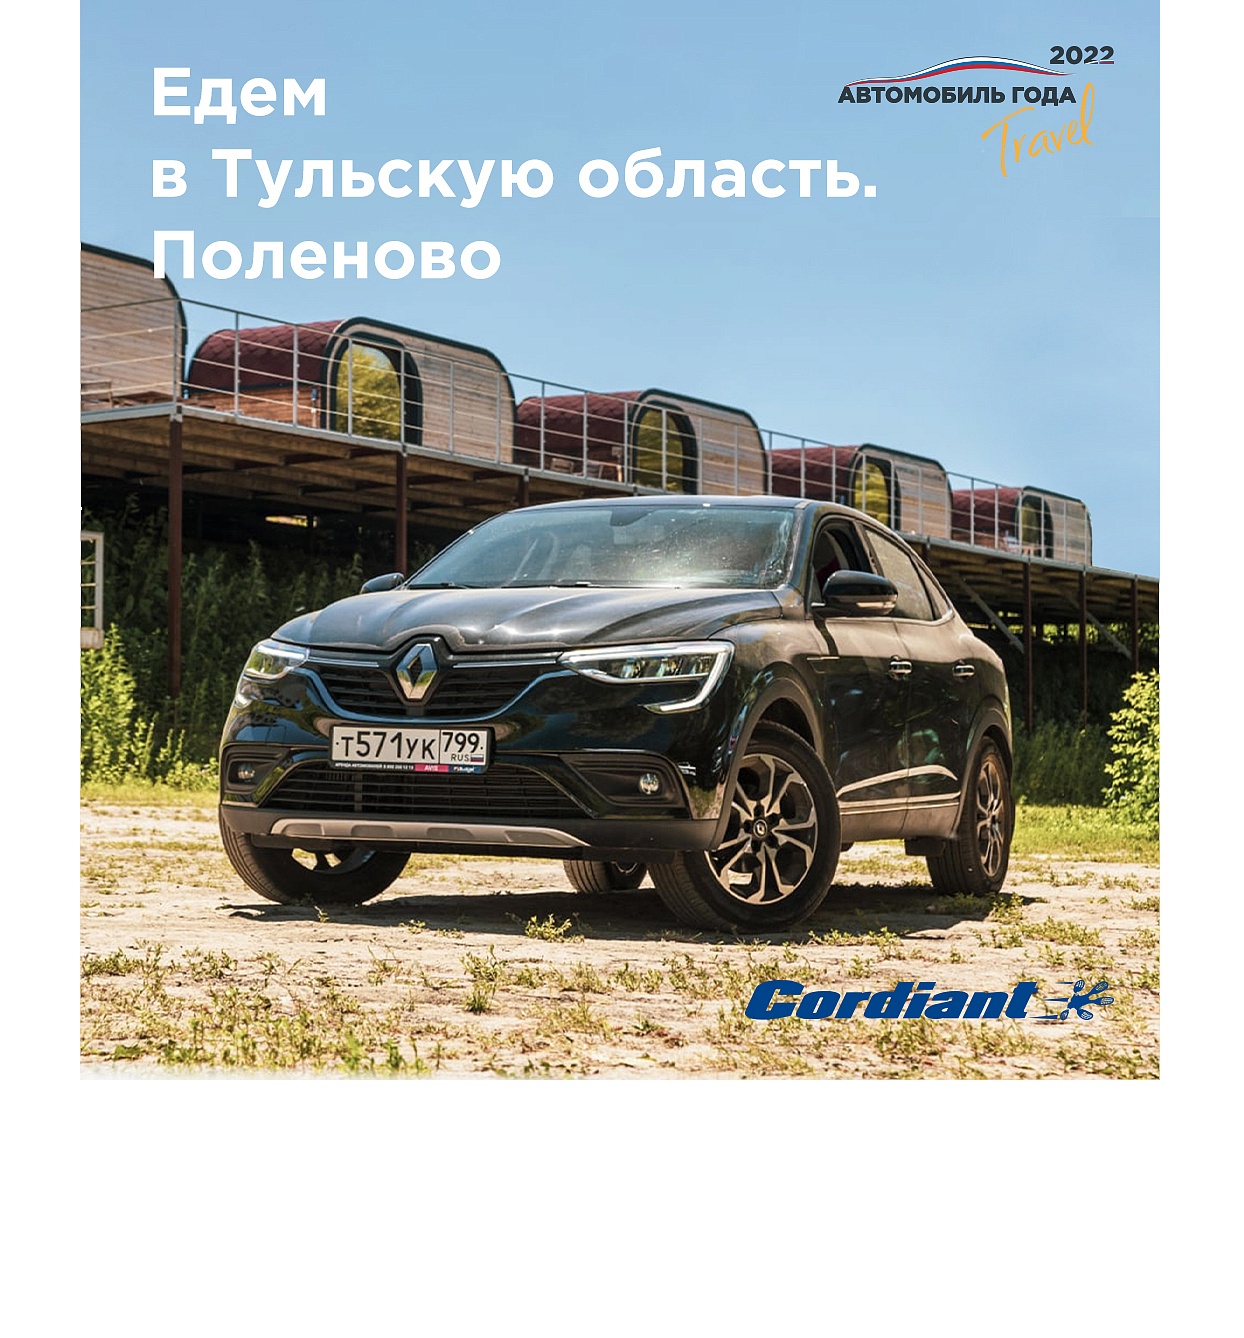 Путешествия по России: едем в Поленово на Renault